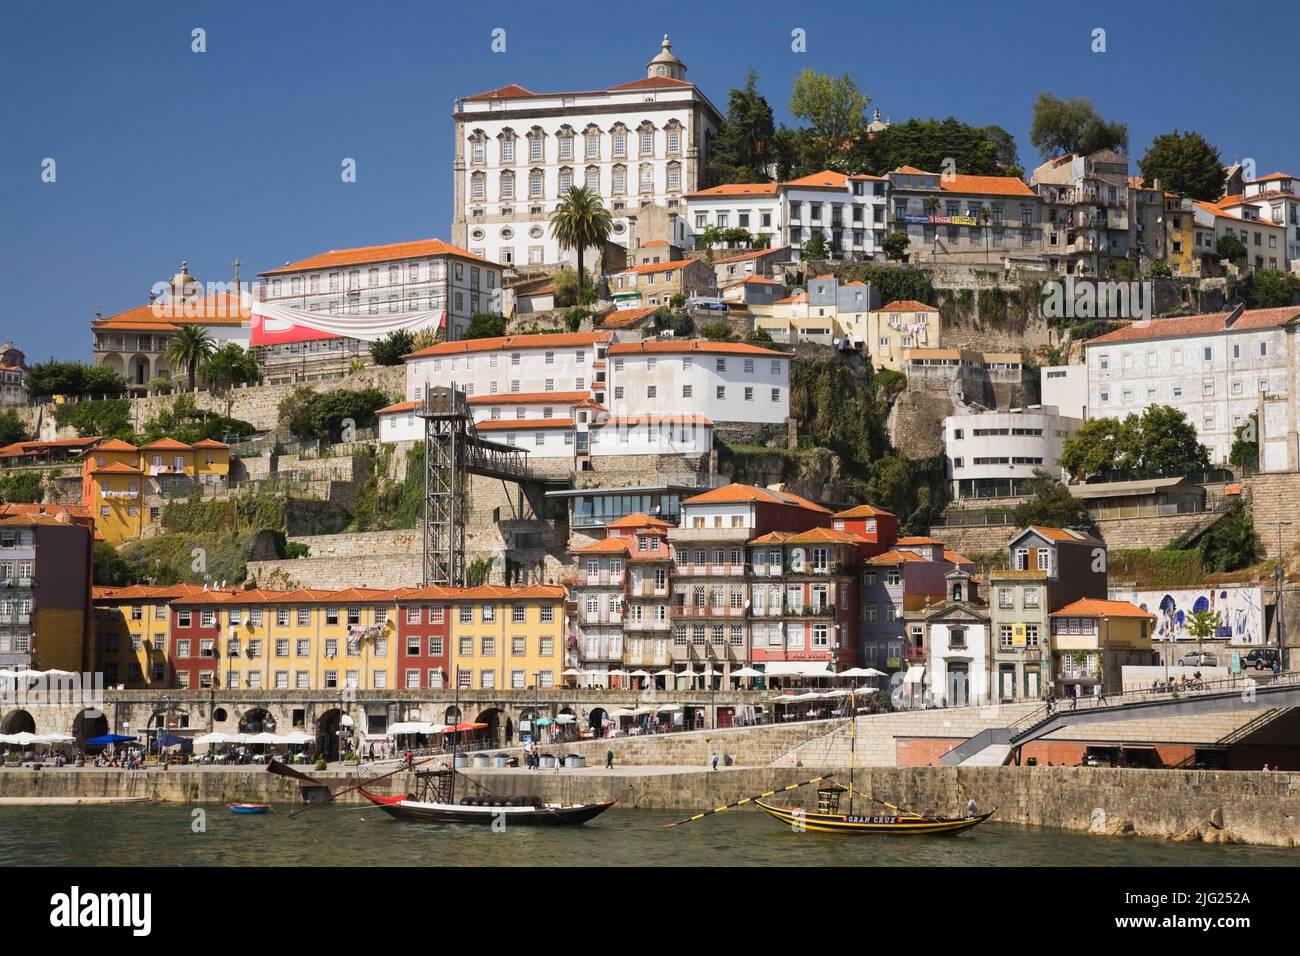 Le tradizionali barche portuali sul fiume Duoro, Porto, Portogallo, Europa. Foto Stock